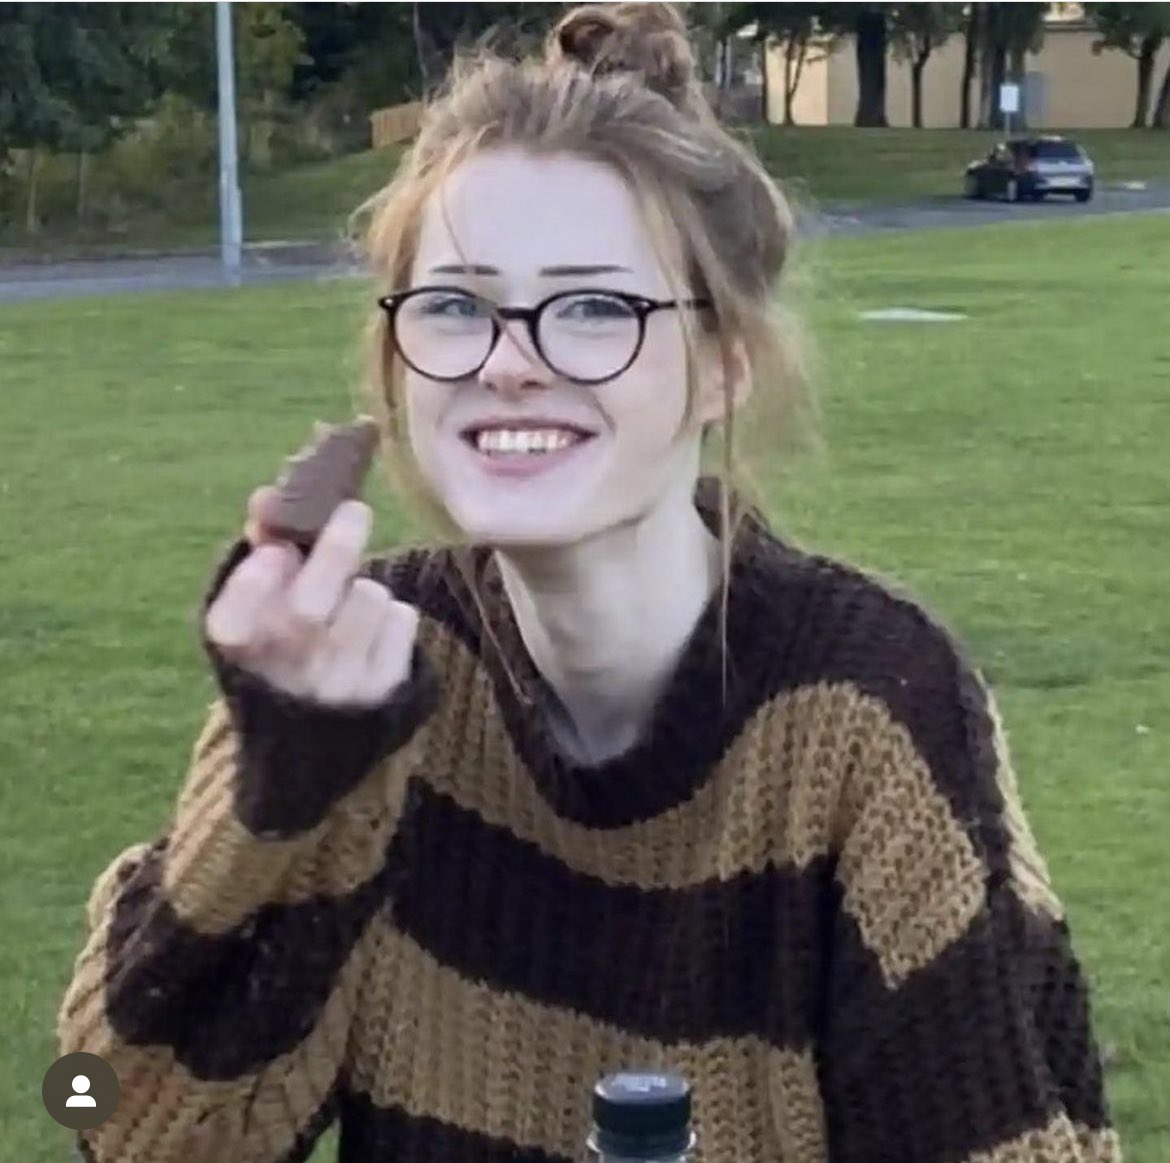 Brianza Ghey de 16 años fue apuñalada este fin de semana en Cheshire uk por dos jovenes de 15 años hasta la muerte
Brianna era una joven trans, los discursos de odio MATAN
#RIPBriannaGhey #justiceforbriannaghey 
🏳️‍⚧️